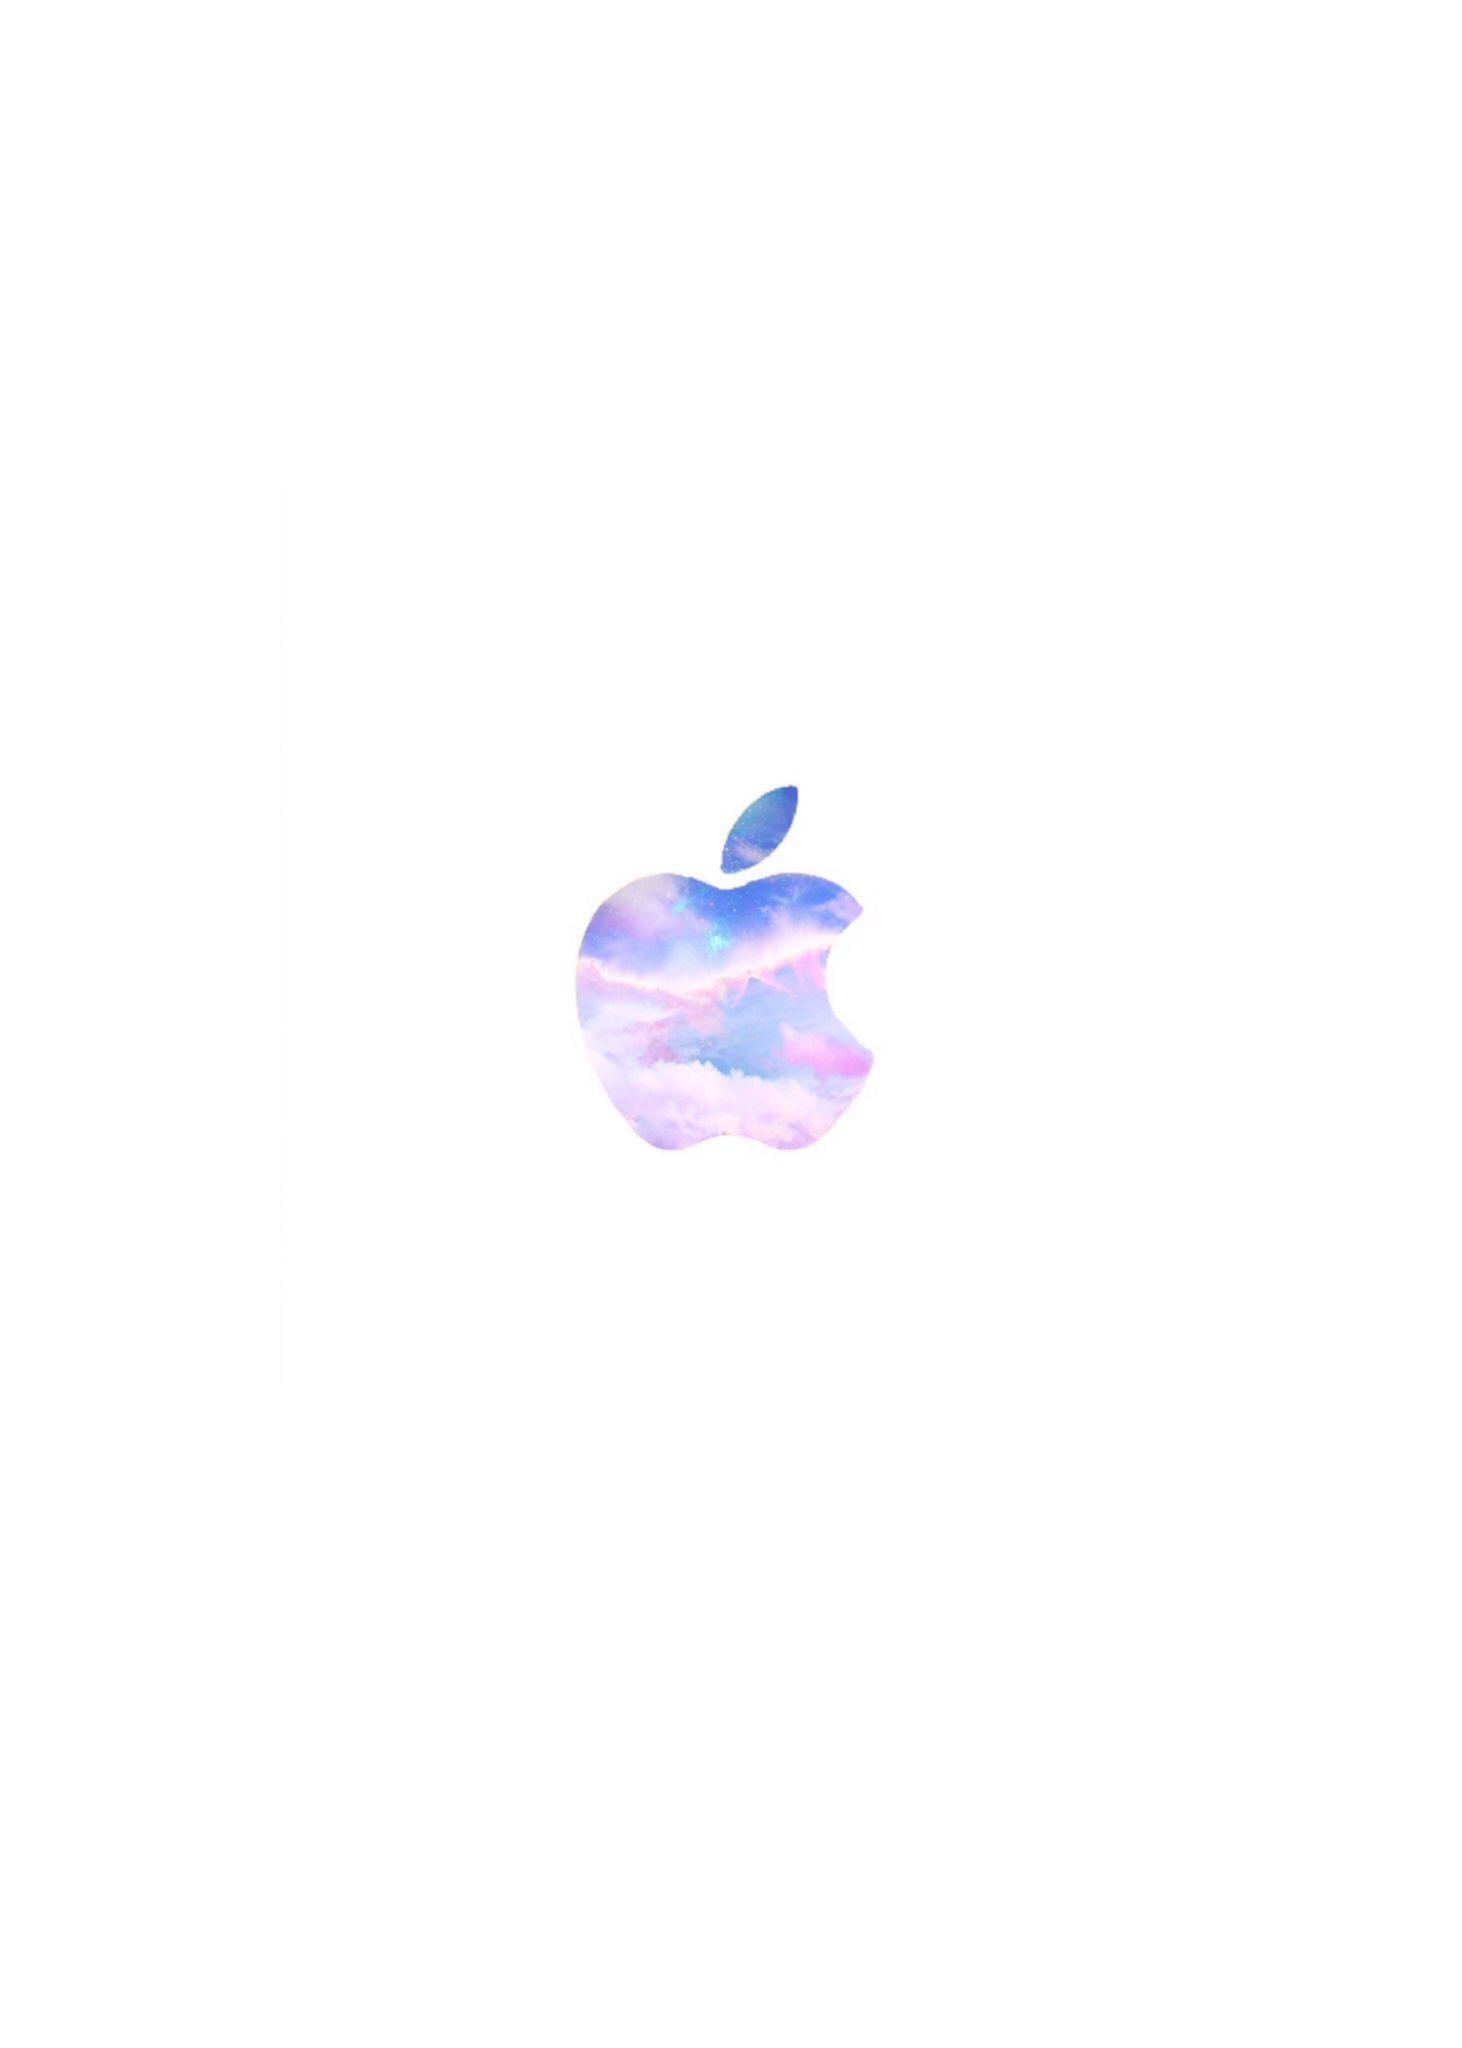 Galxay Apple Logo - Galaxy Apple Logo | Apple Logos | Pantalla, Logotipos, Fondos de ...